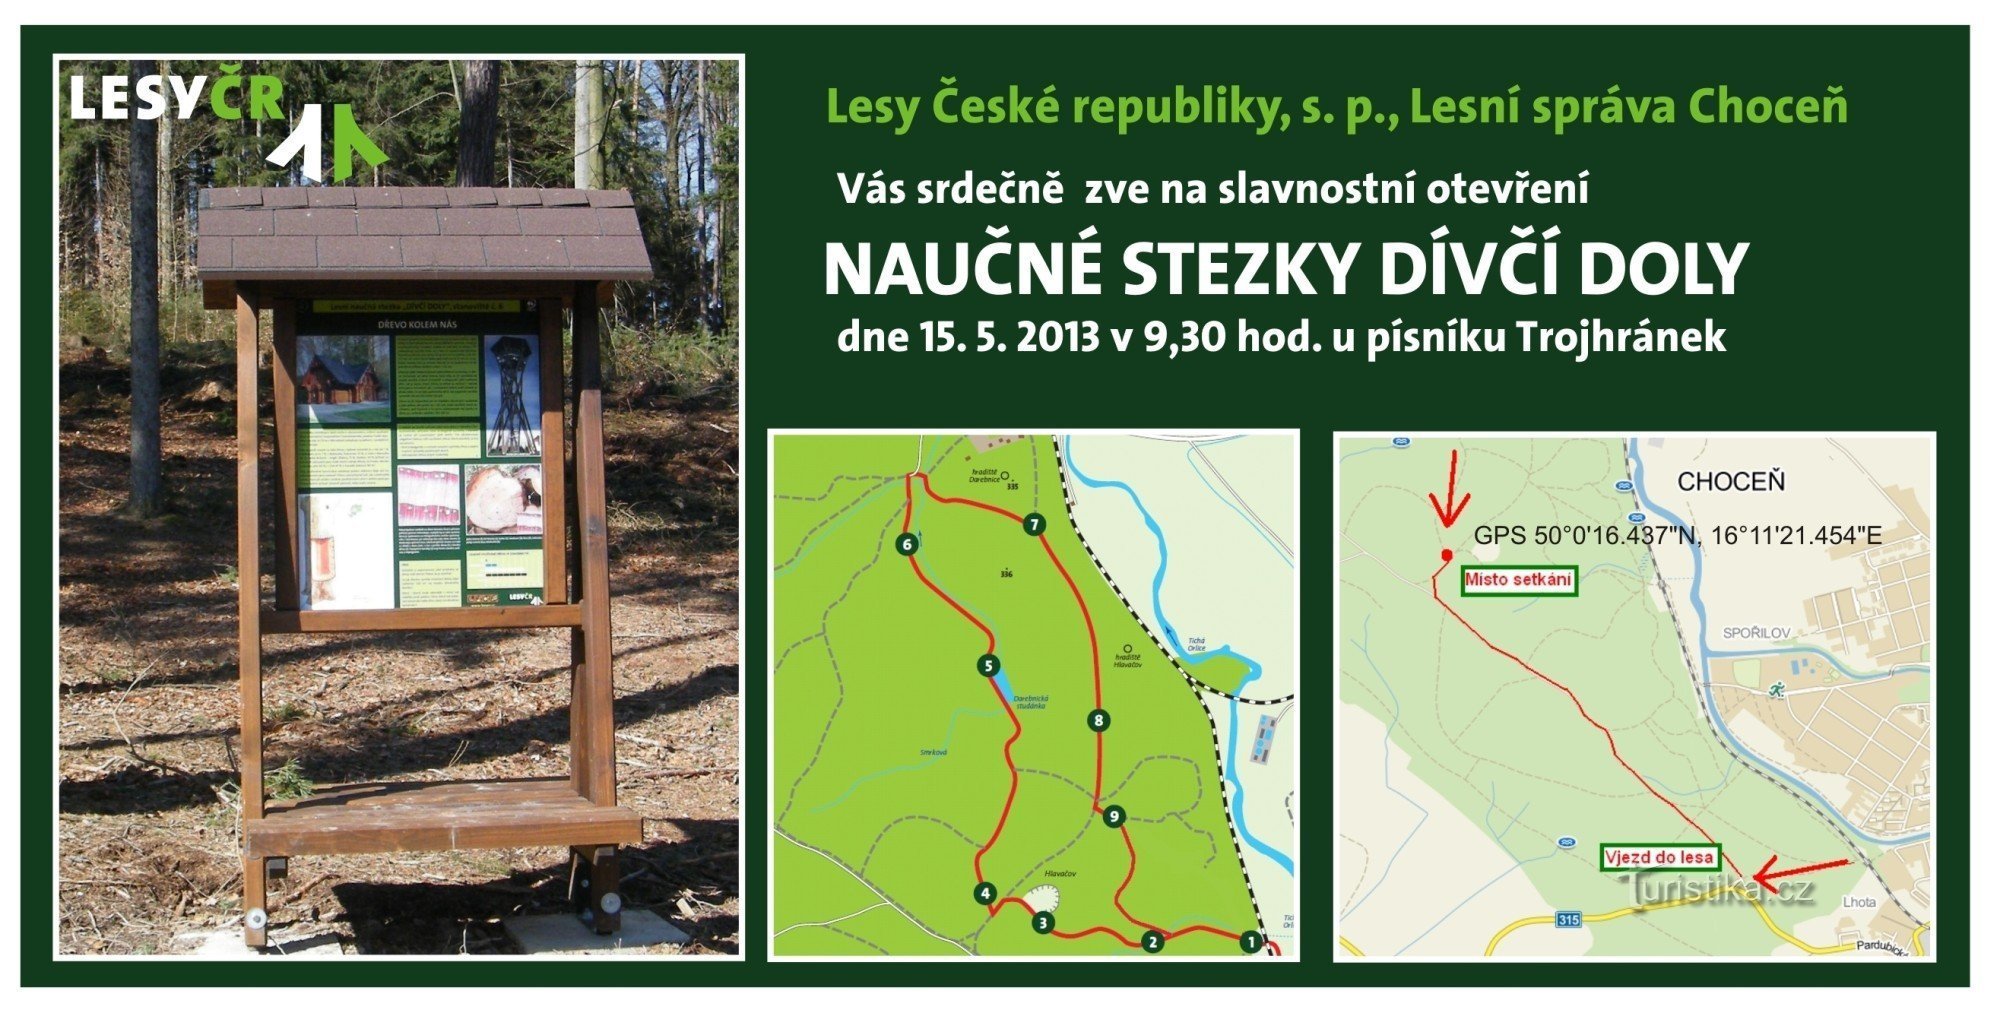 W Choceňsku Lesy ČR otwiera nową ścieżkę edukacyjną Dívčí doly